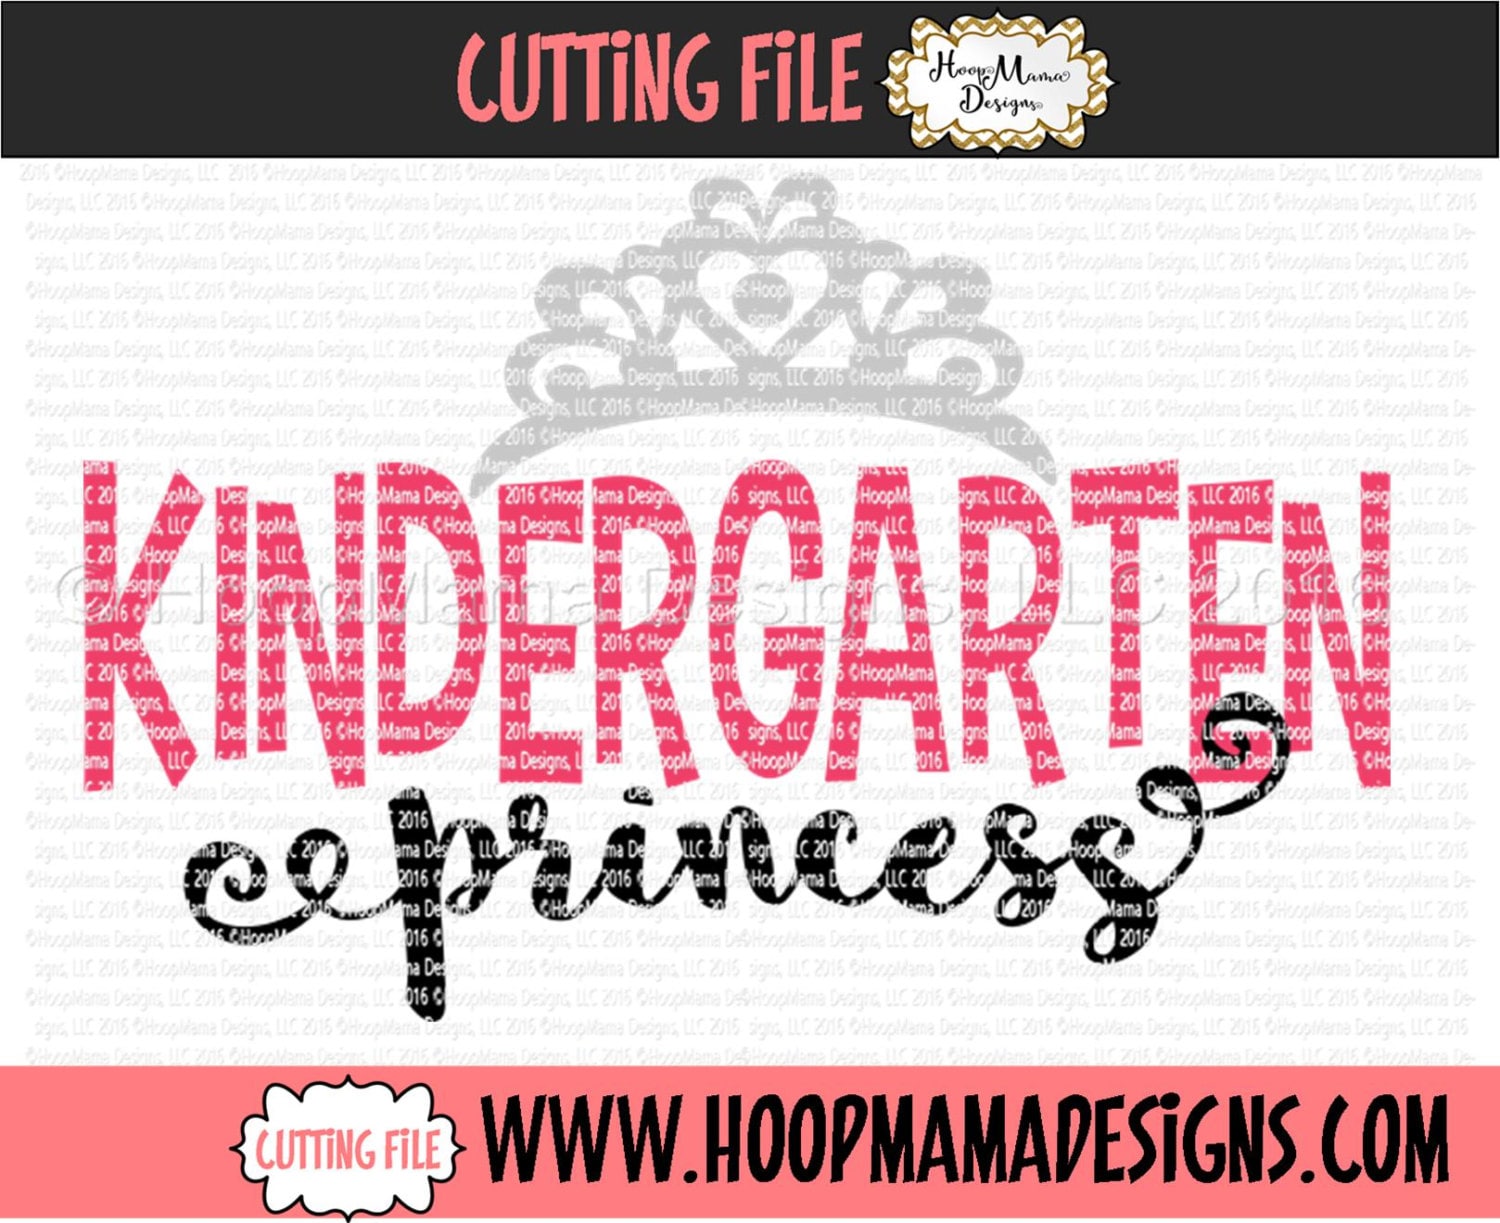 Free Free 316 Kindergarten Princess Svg SVG PNG EPS DXF File